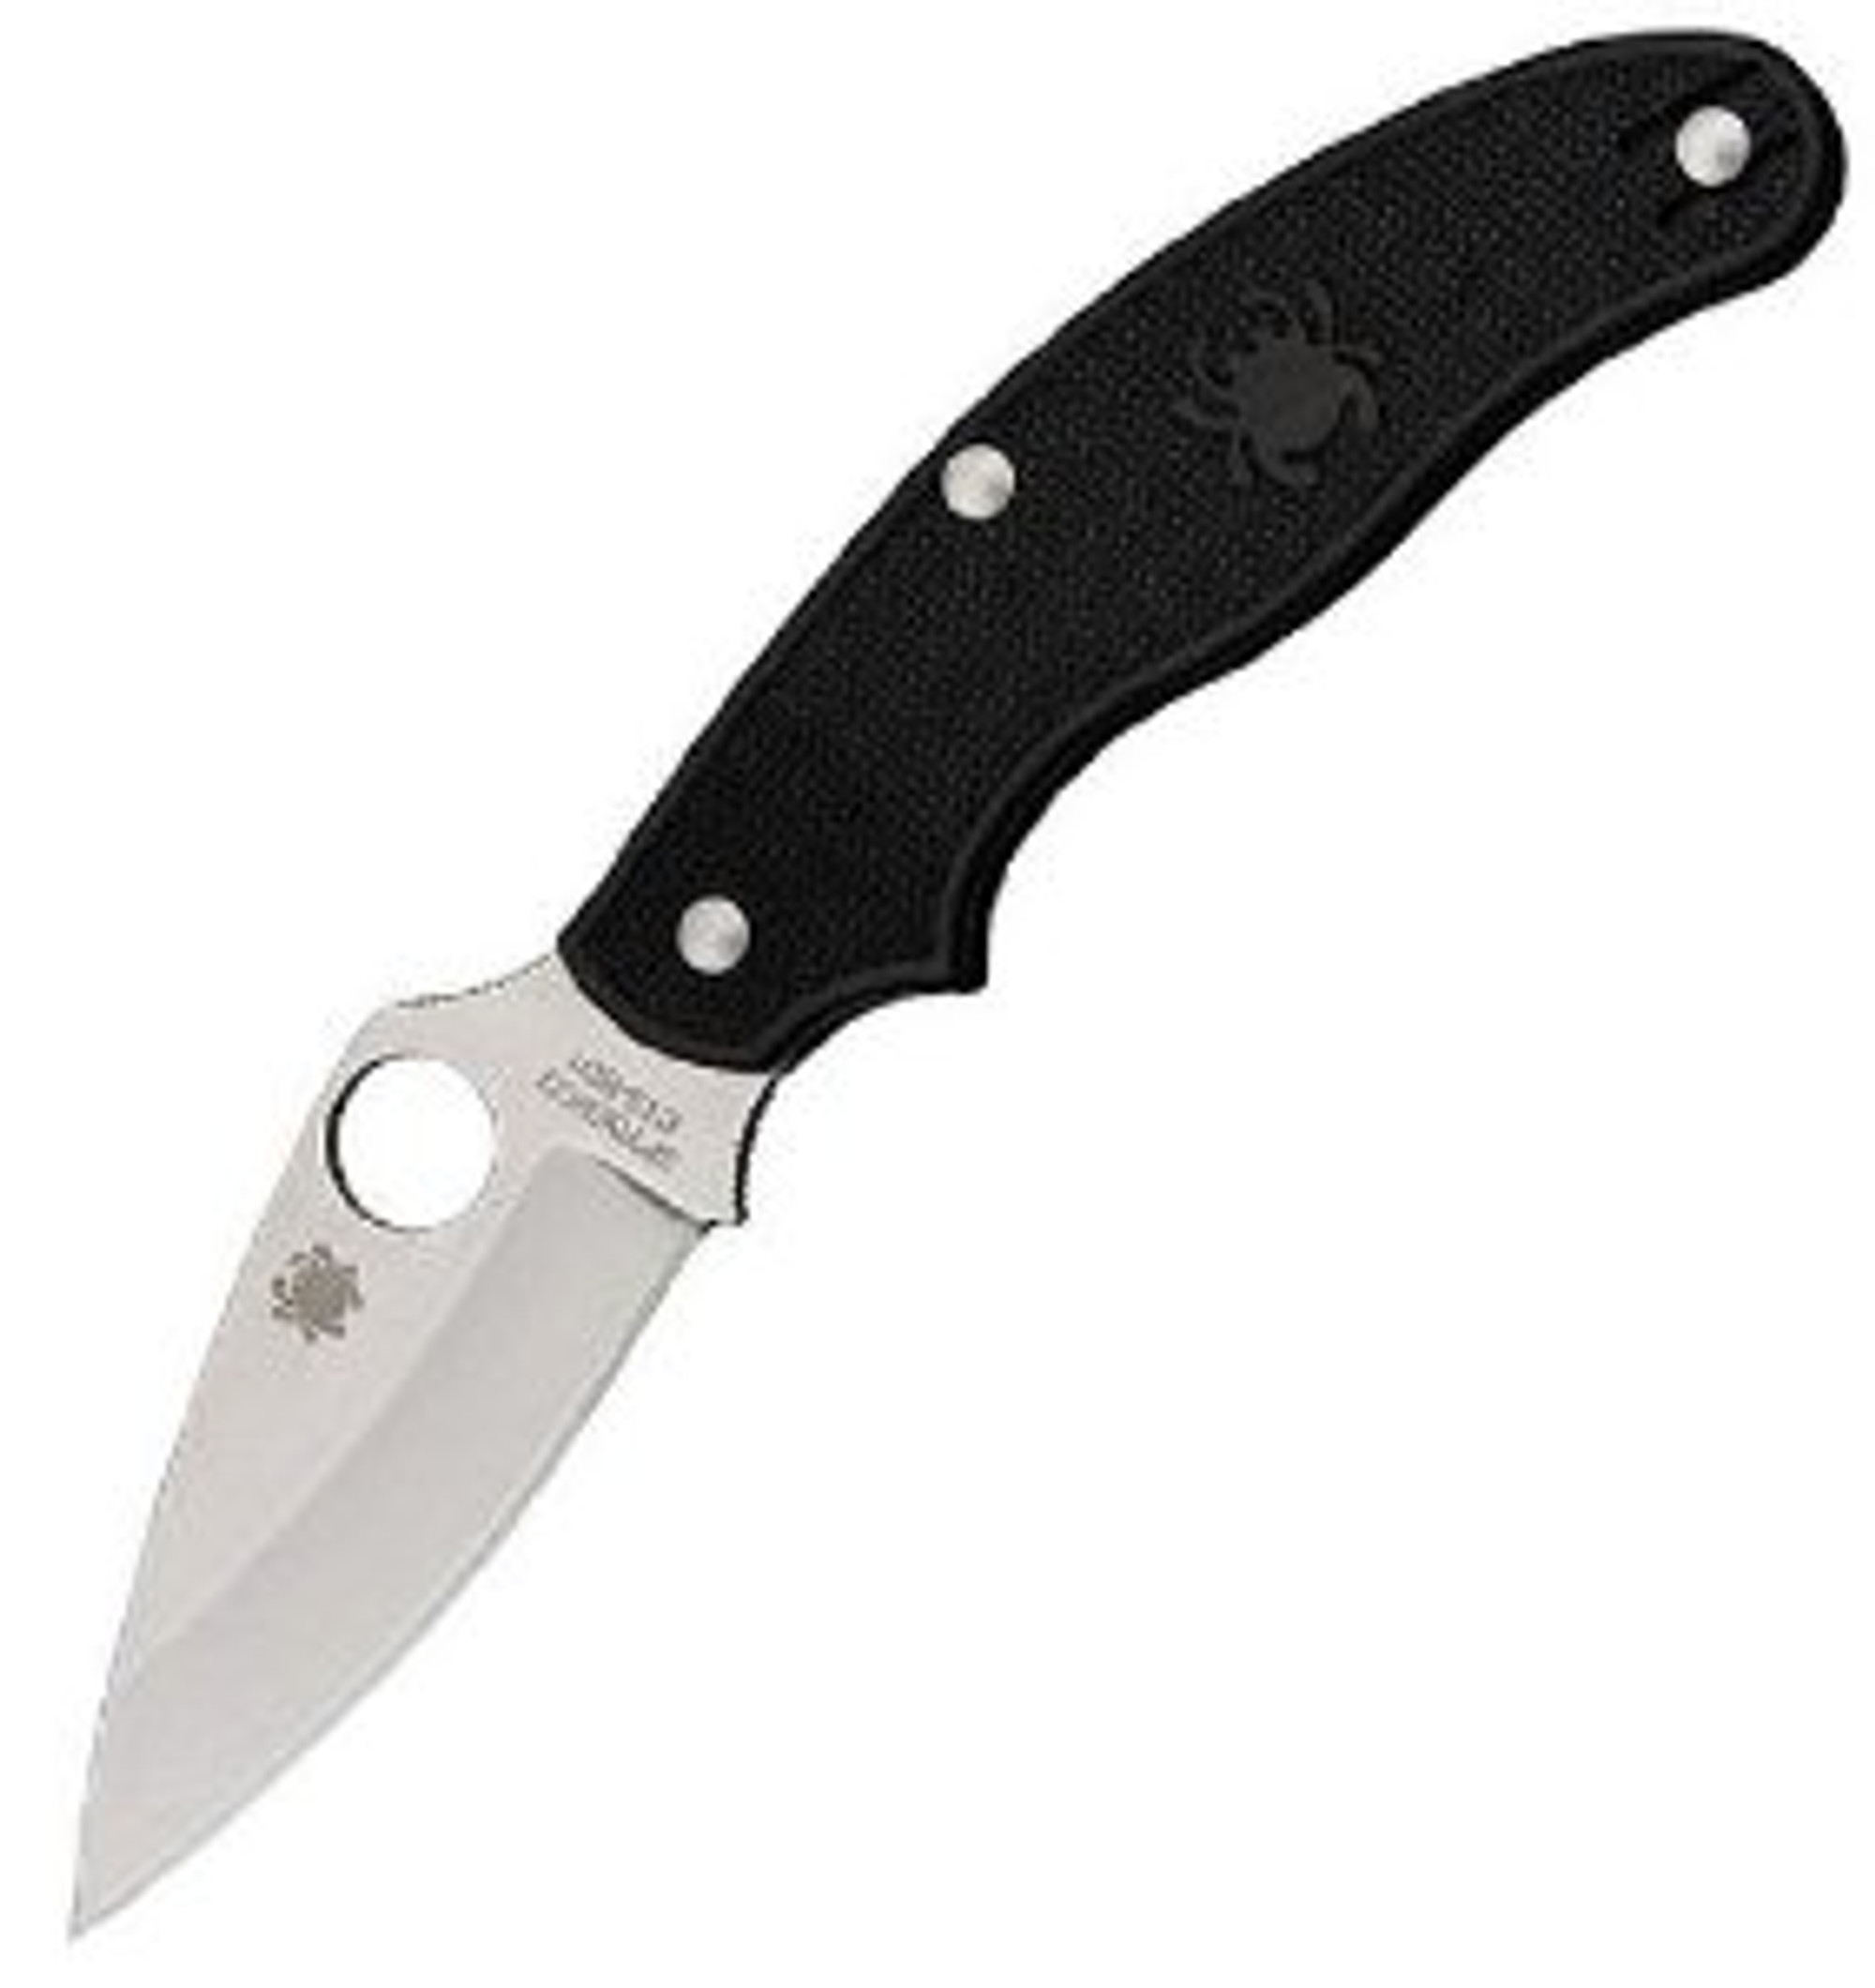 Spyderco UK Penknife Black FRN Leaf Plain Edge Folding Knife